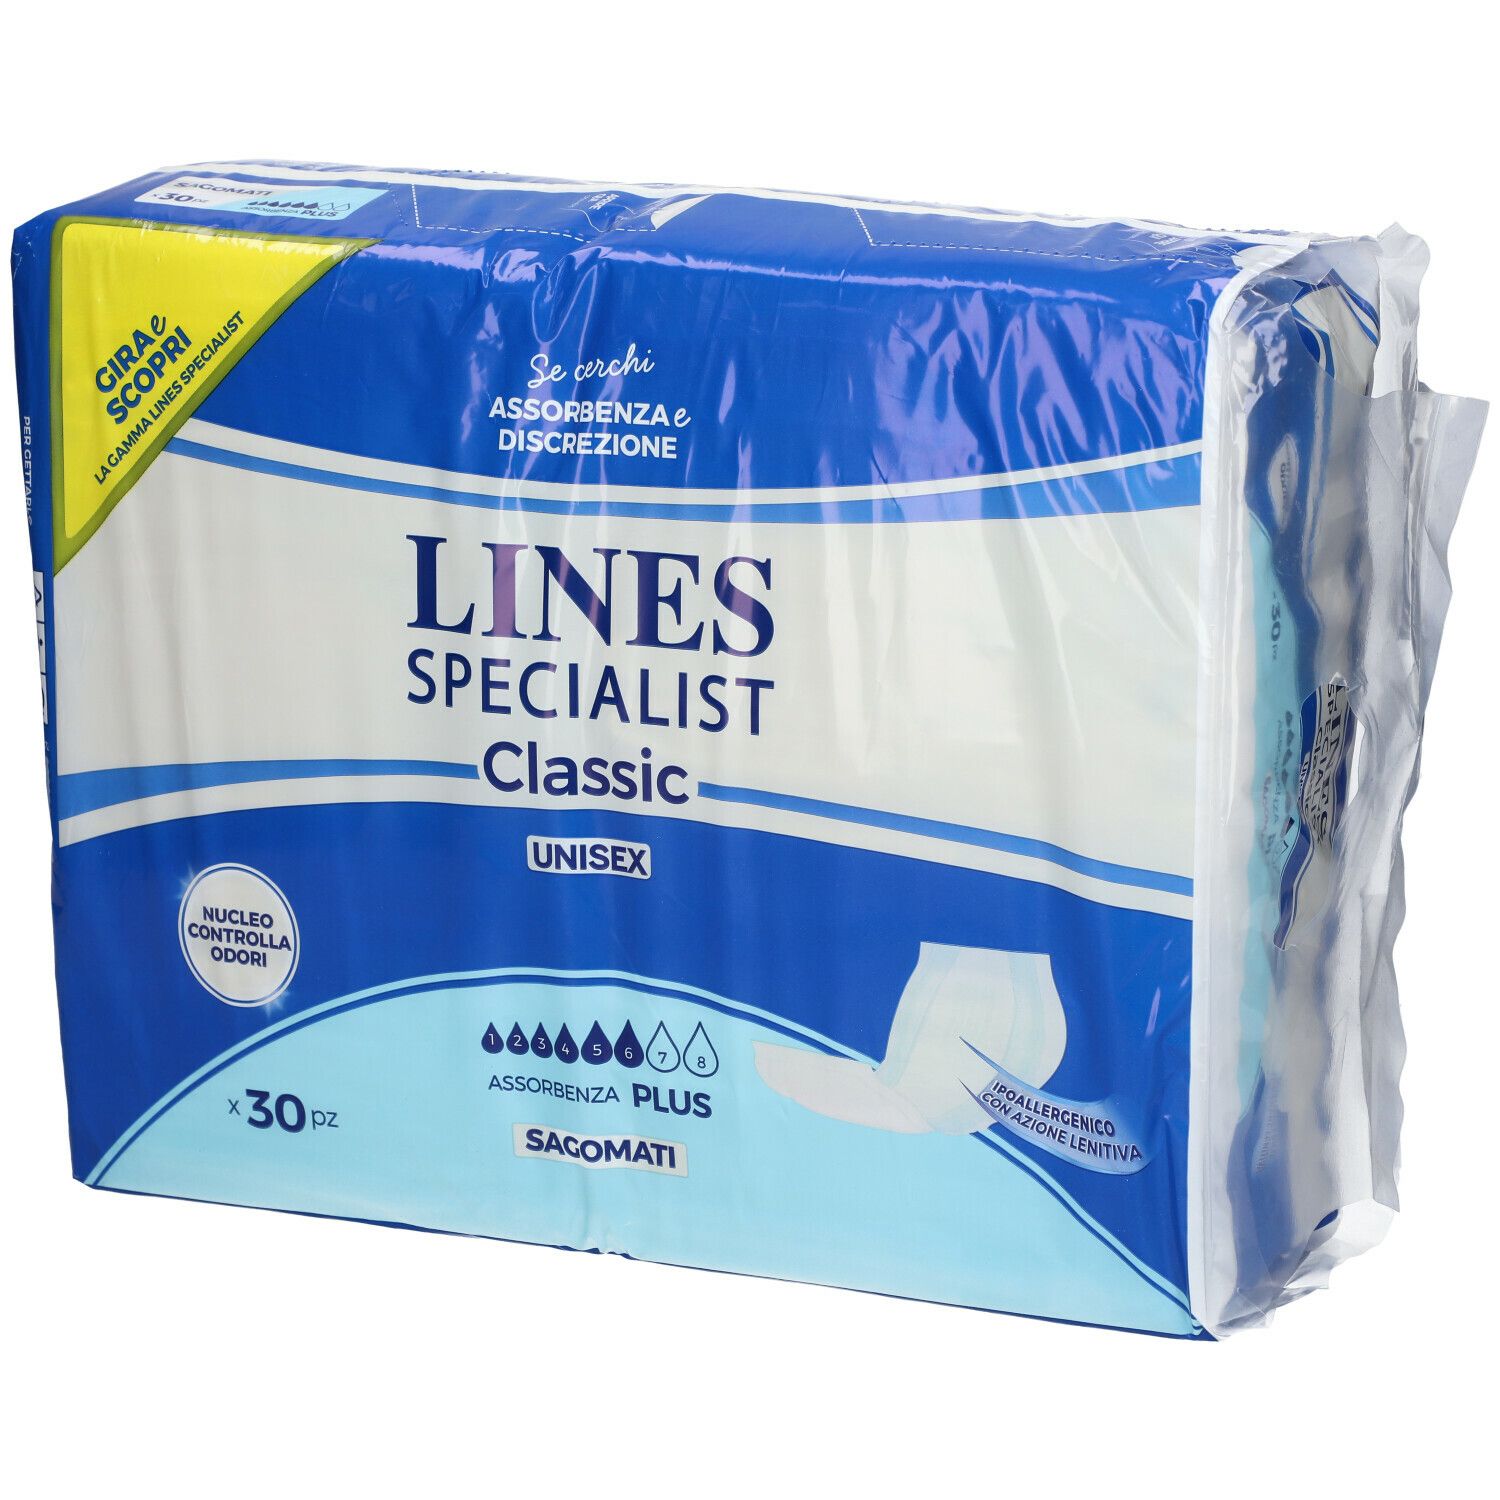 LINES Specialist Classic Unisex Sagomati